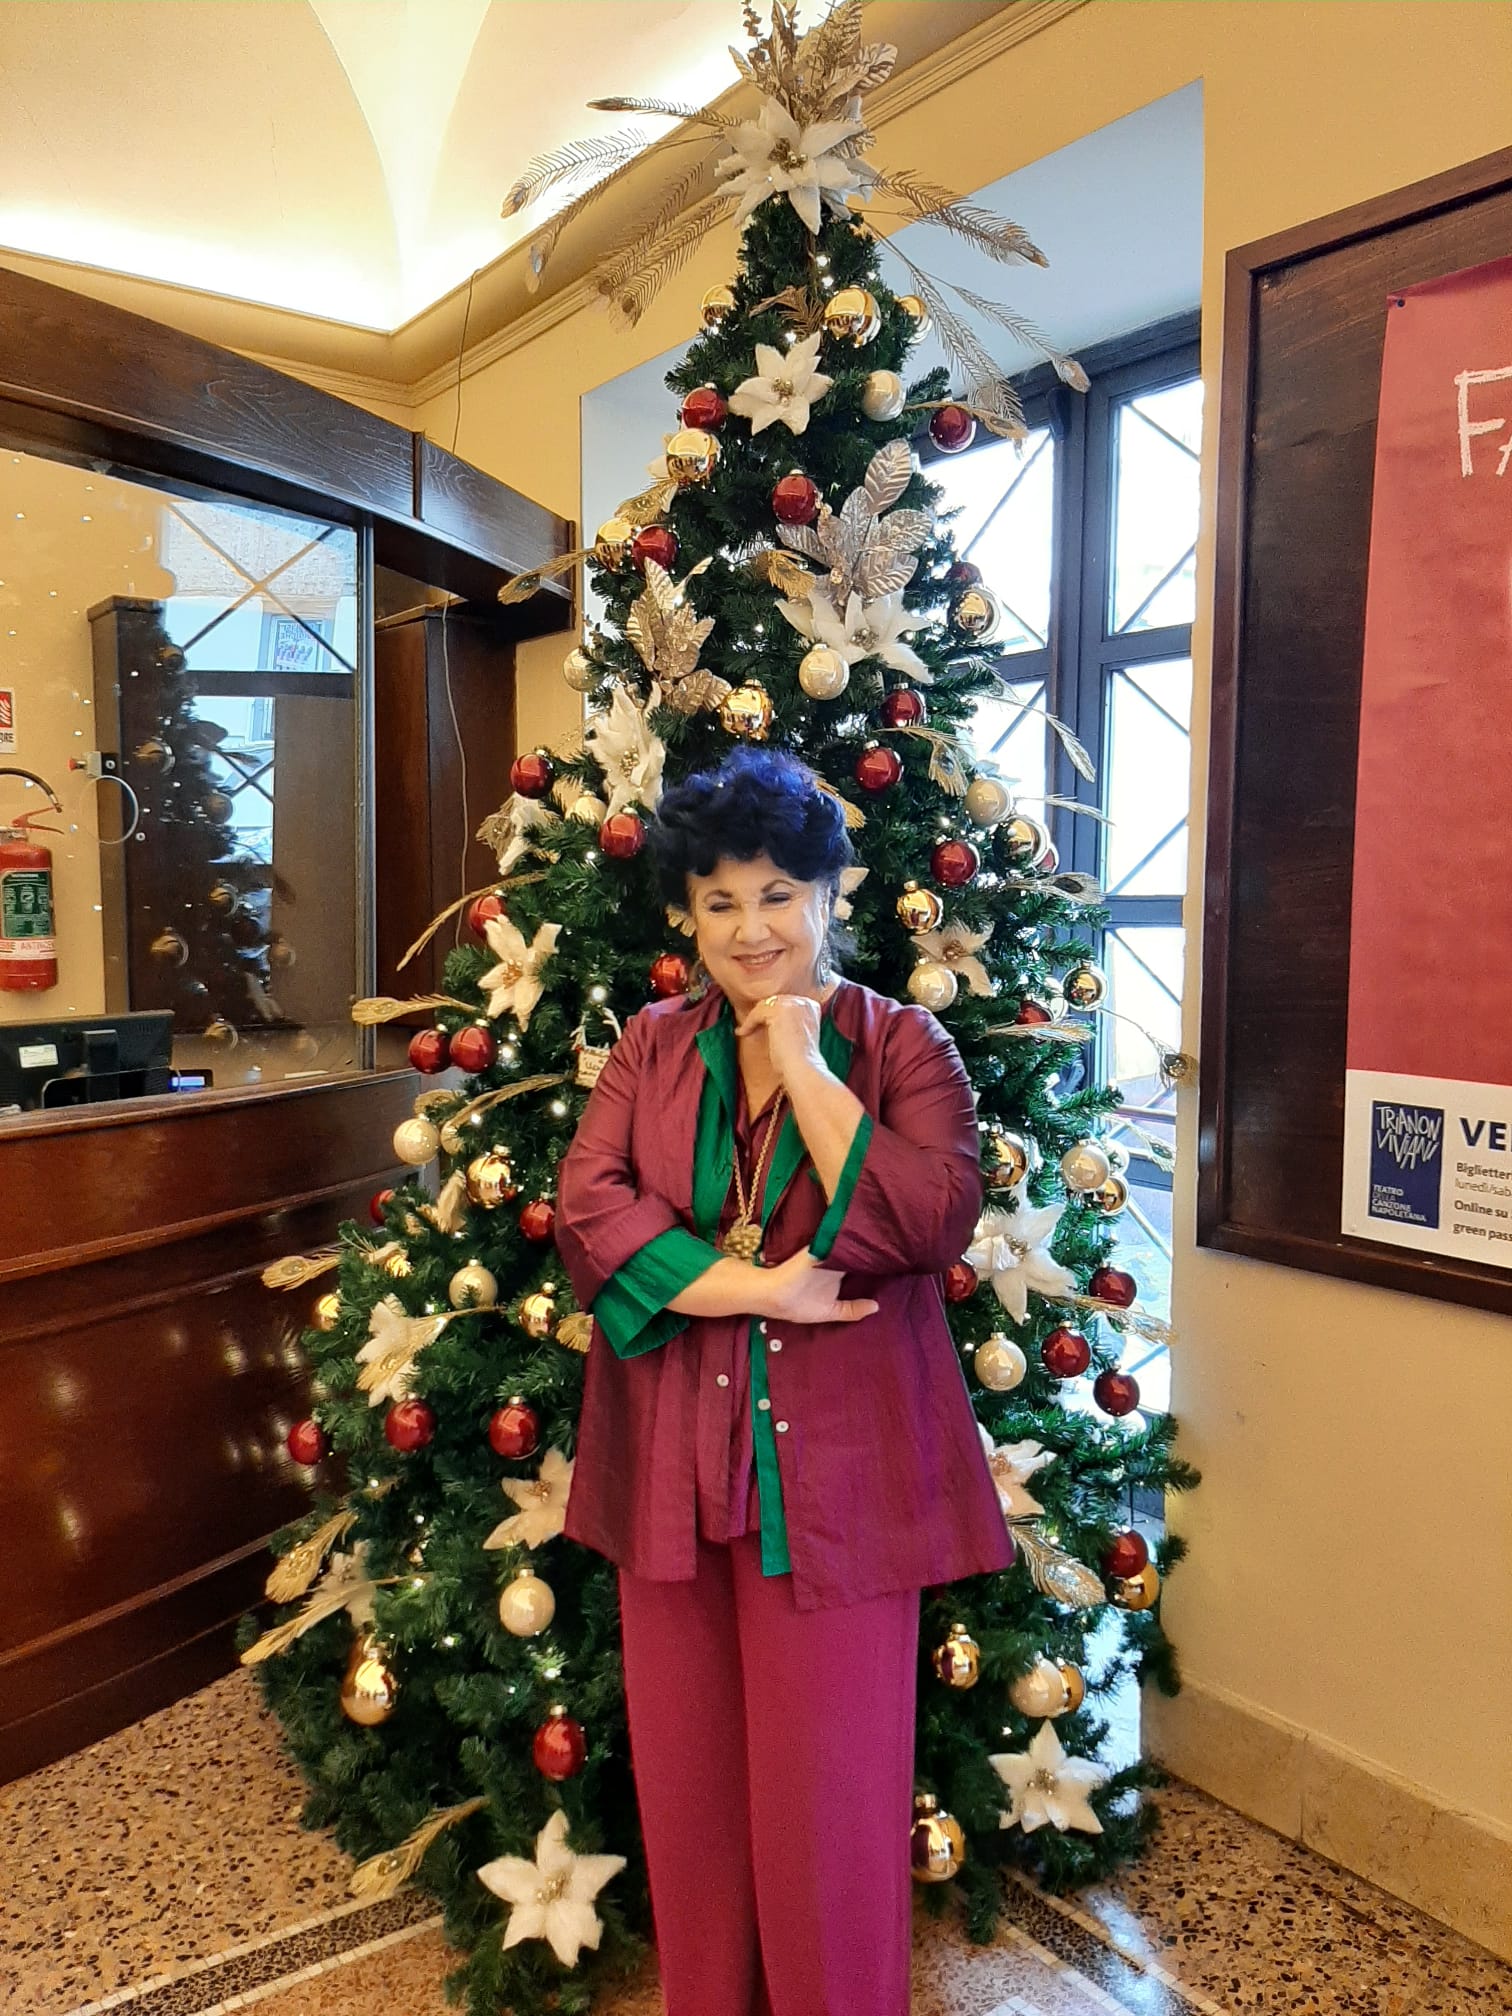 Al Trianon Viviani, Natale con l’albero della rete di Forcella